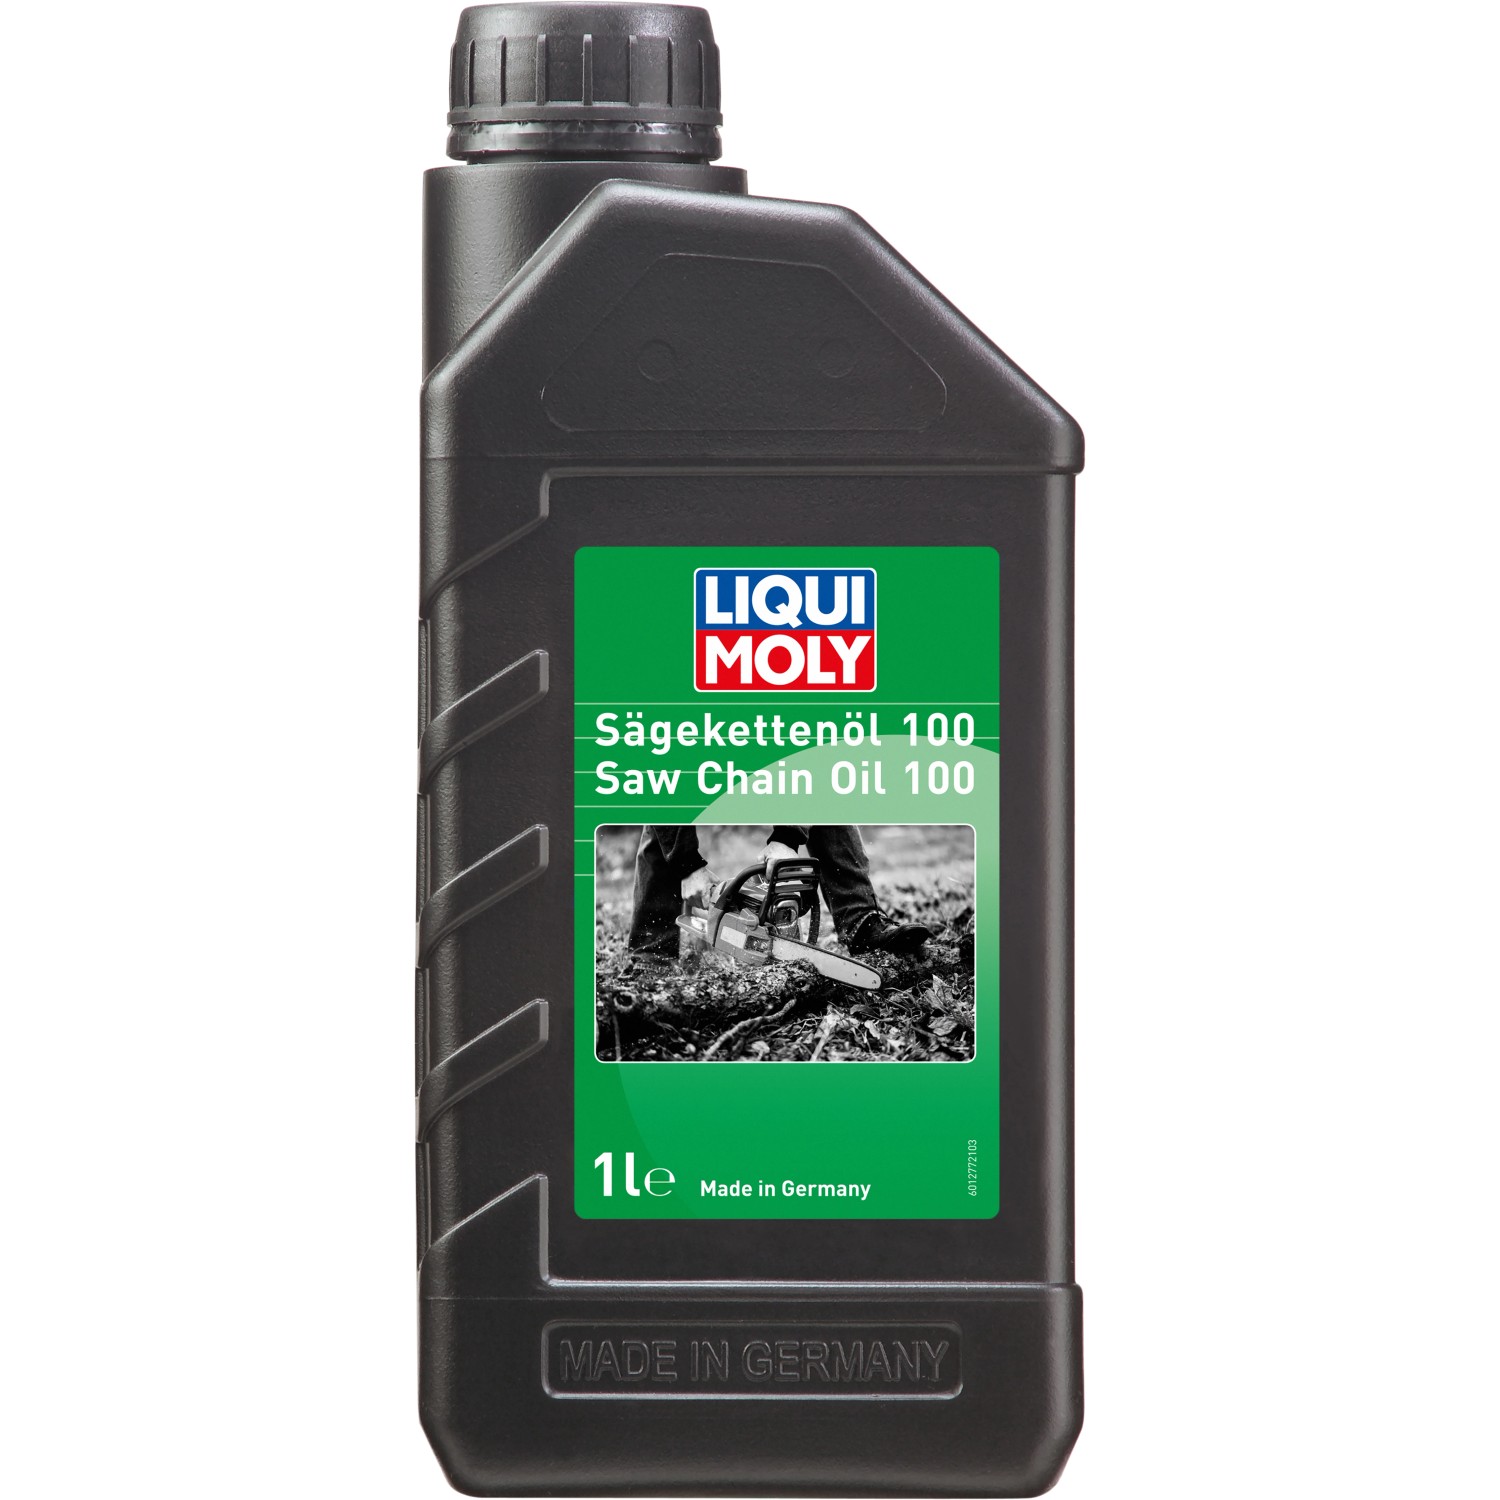 Liqui Moly Diesel Fließ-Fit 150 ml kaufen bei OBI